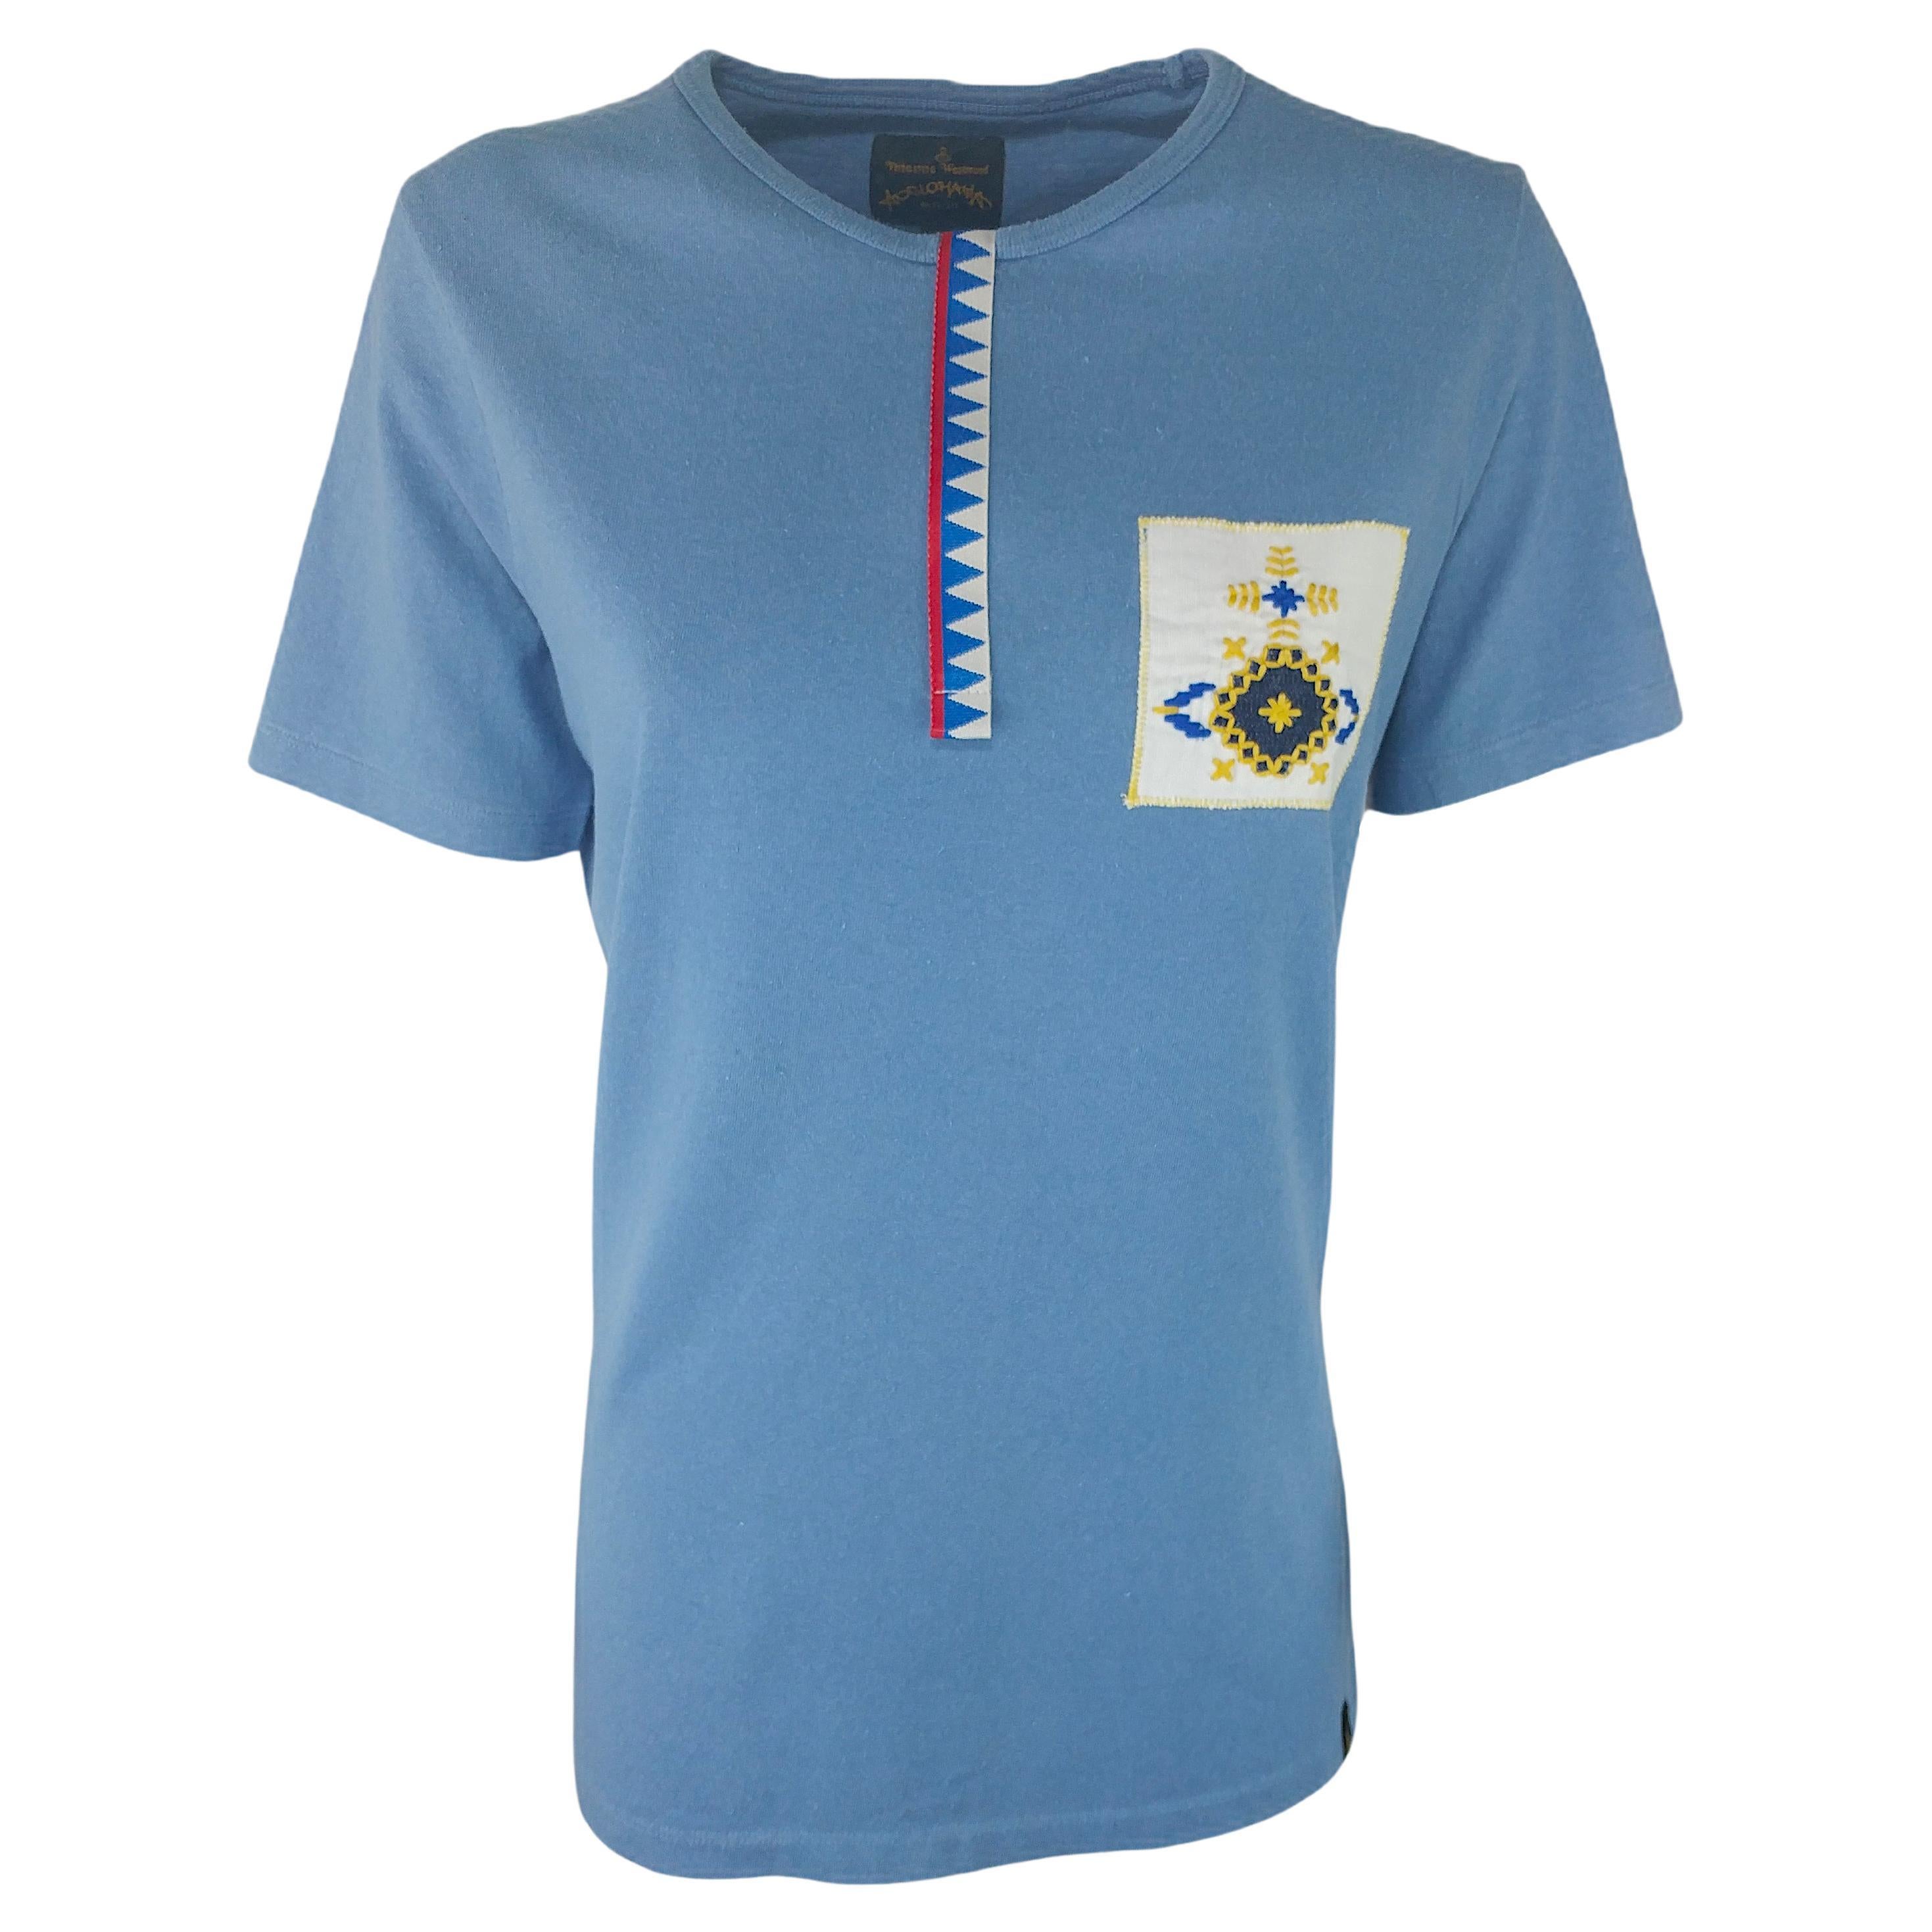 VIVIENNE WESTWOOD - T-shirt en coton bleu indigo avec monogramme brodé, taille M